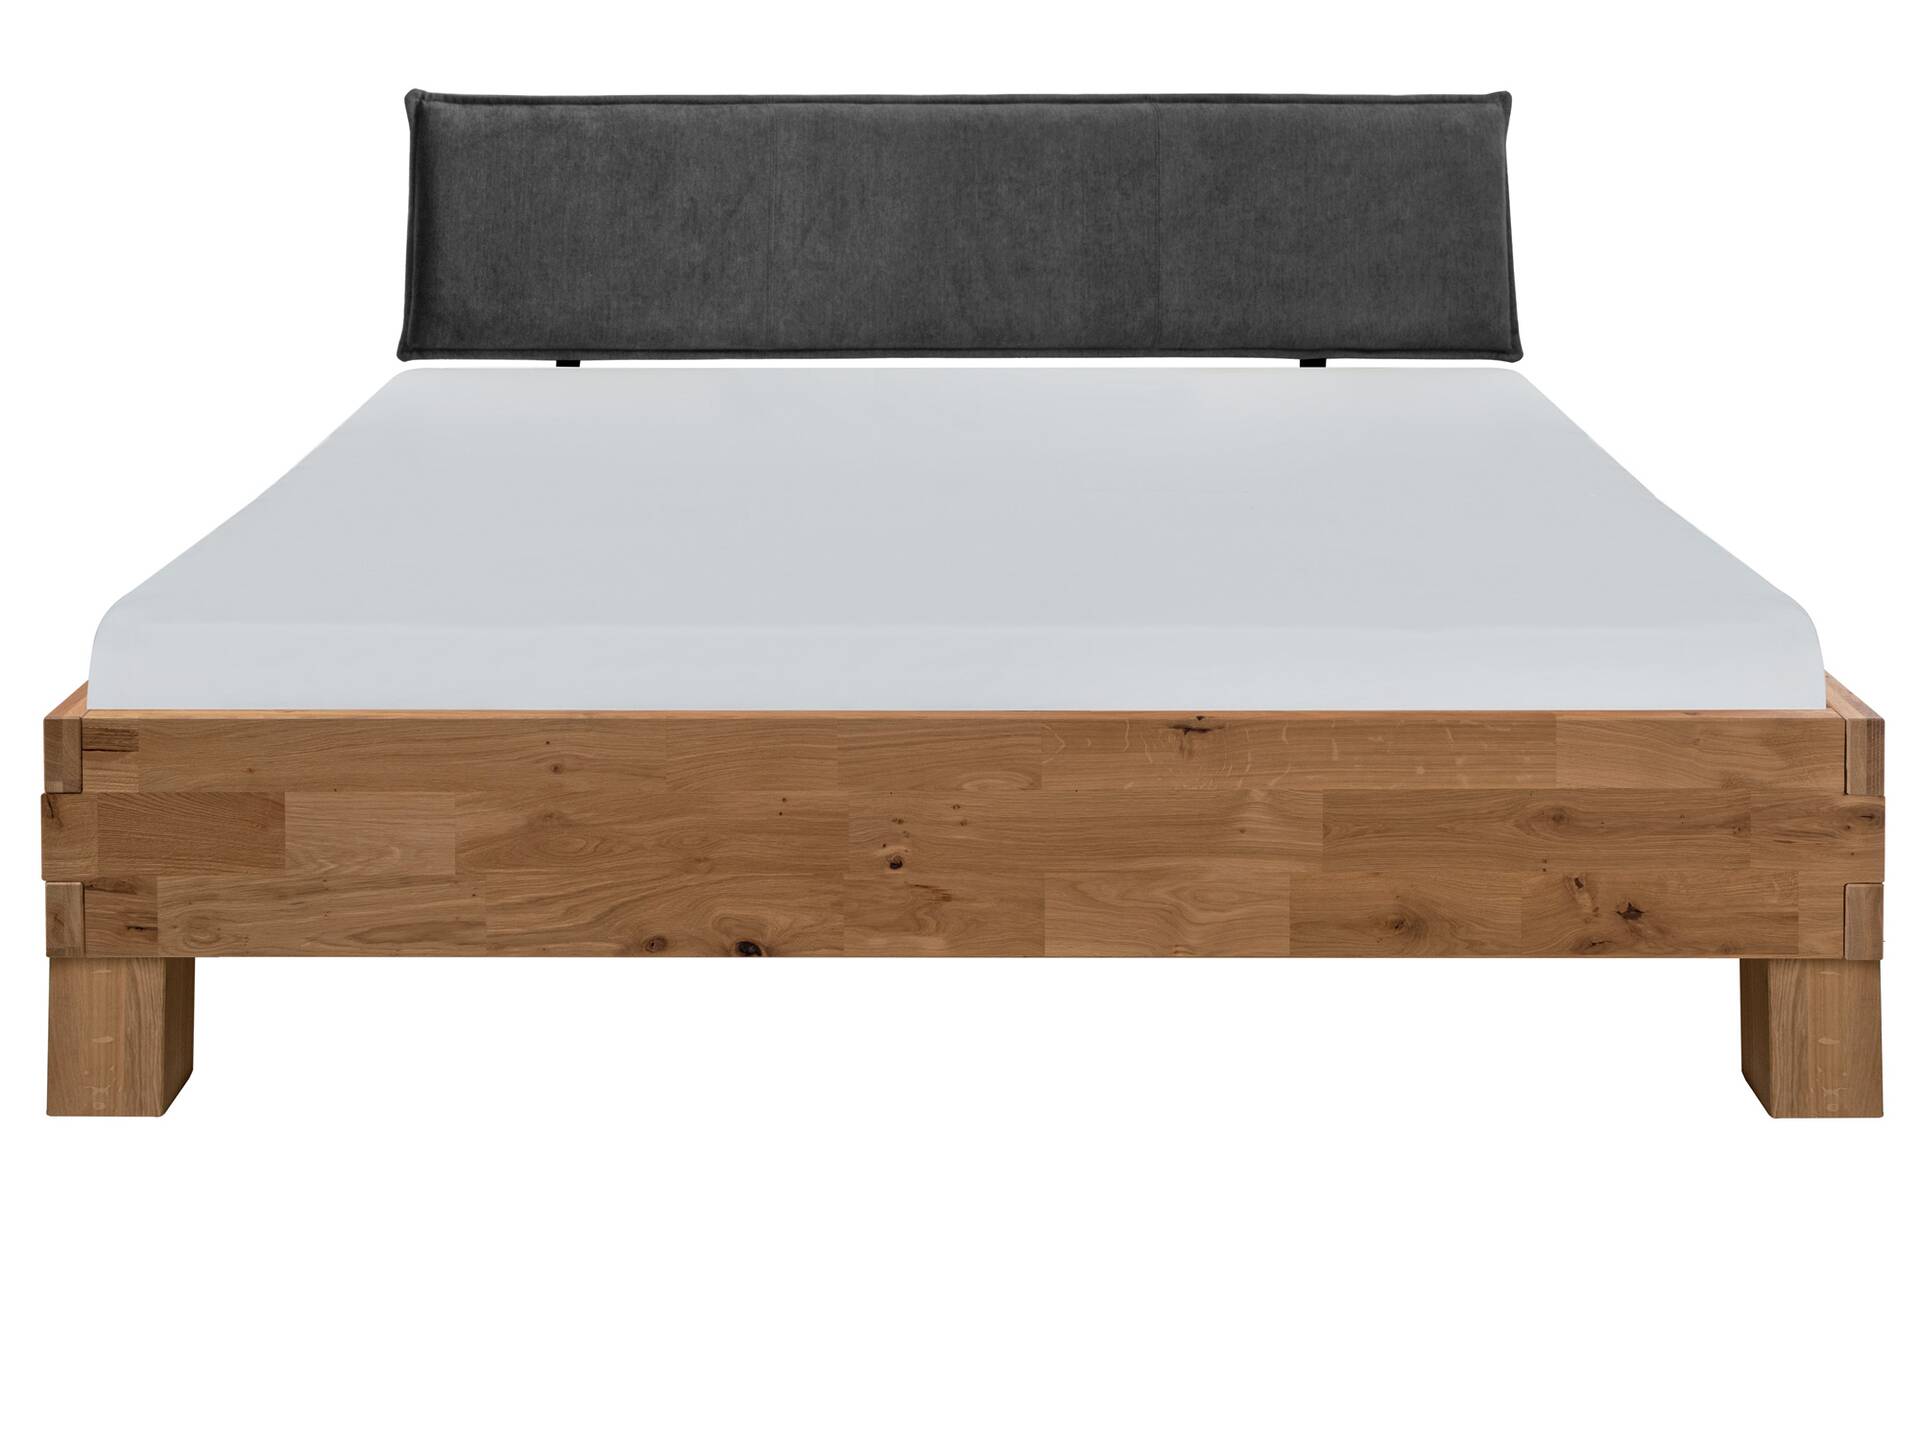 CORDINO 4-Fuß-Bett aus Eiche mit Polster-Kopfteil, Material Massivholz 120 x 220 cm | Eiche unbehandelt | Stoff Anthrazit | gebürstet